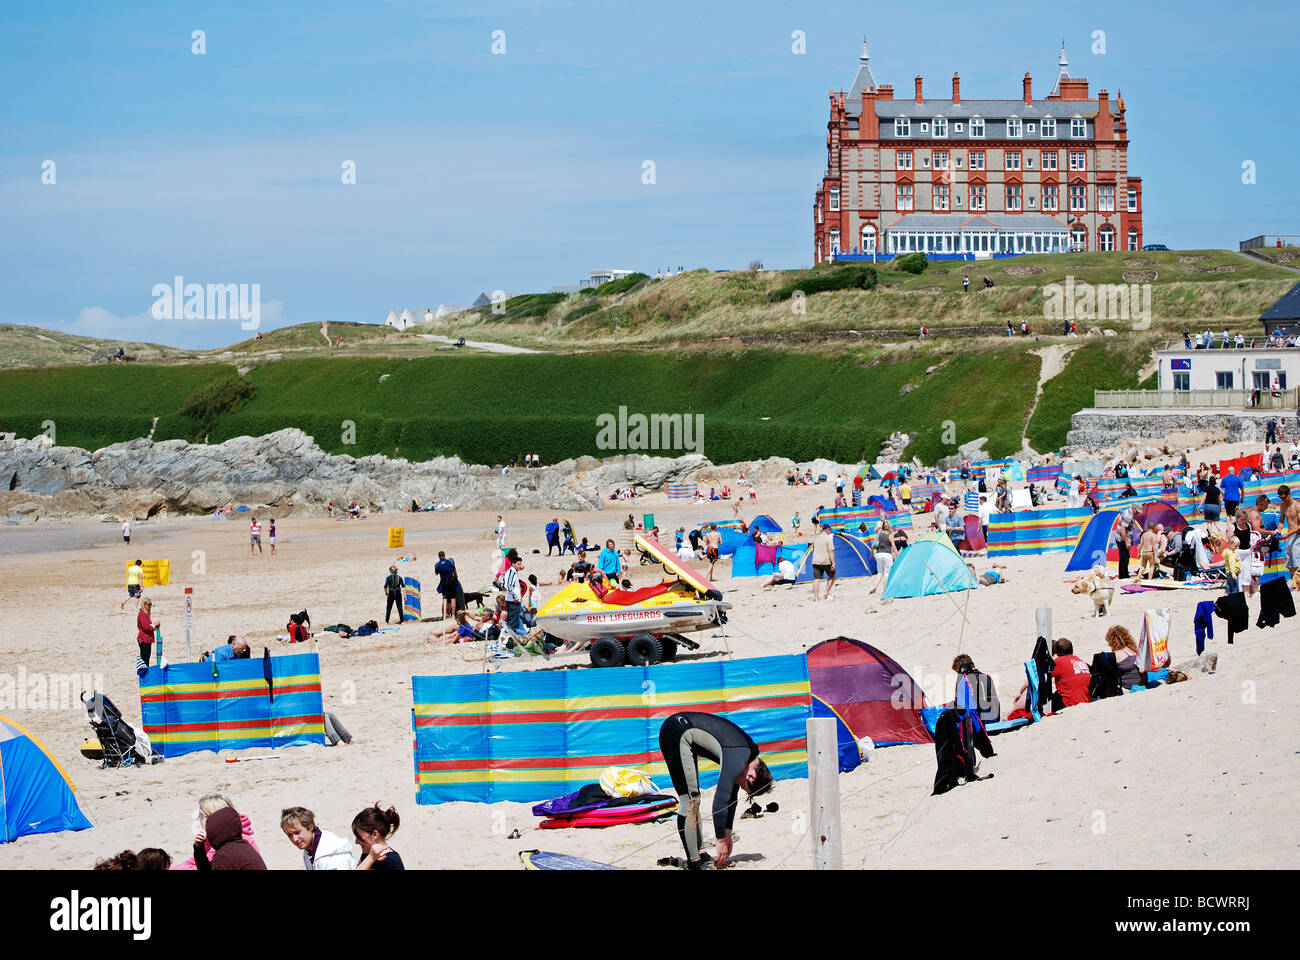 La plage de fistral, Cornwall, uk avec thw pointe hotel en arrière-plan Banque D'Images